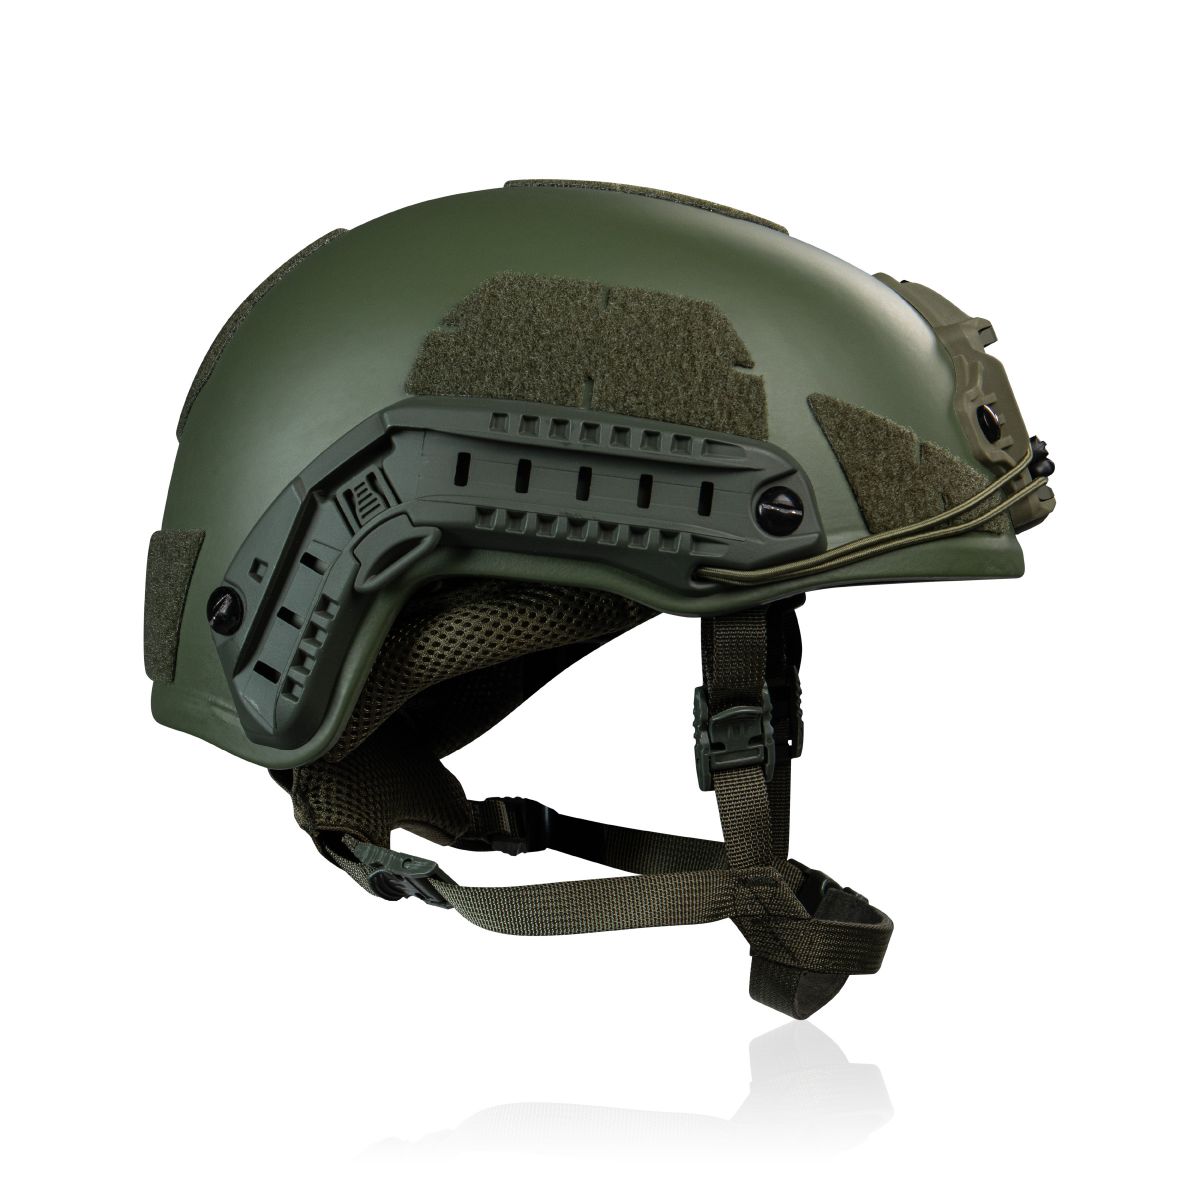 Кевларовый шлем TOR-D-VN (улучшенный). Производитель: Украина. Цвет Олива L 2